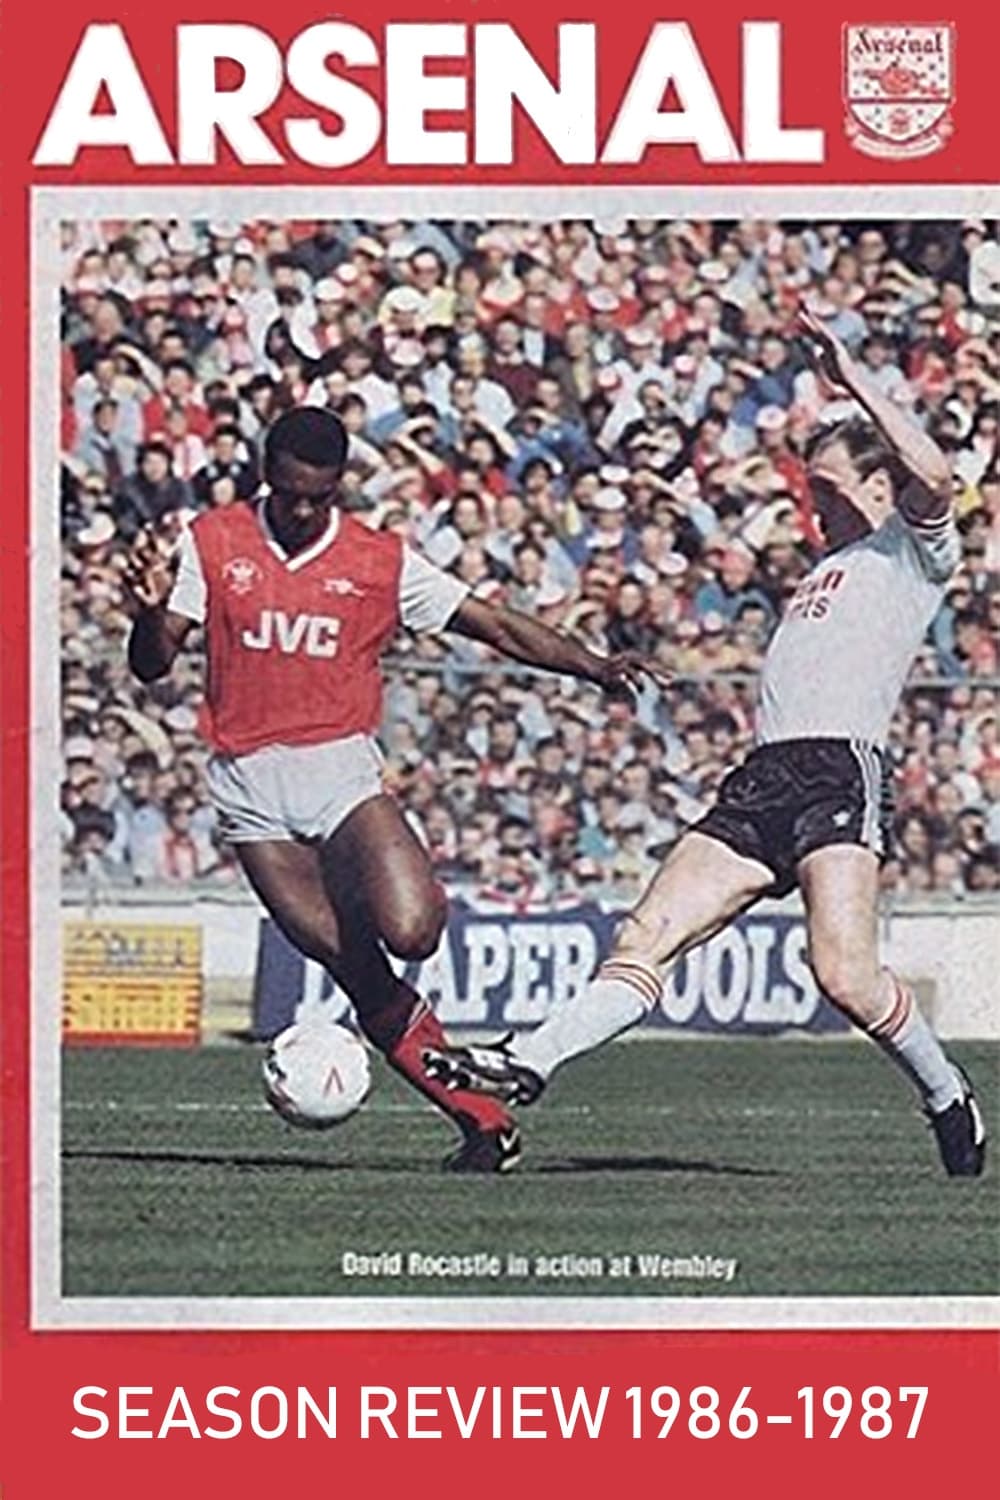 Arsenal: Season Review 1986-1987